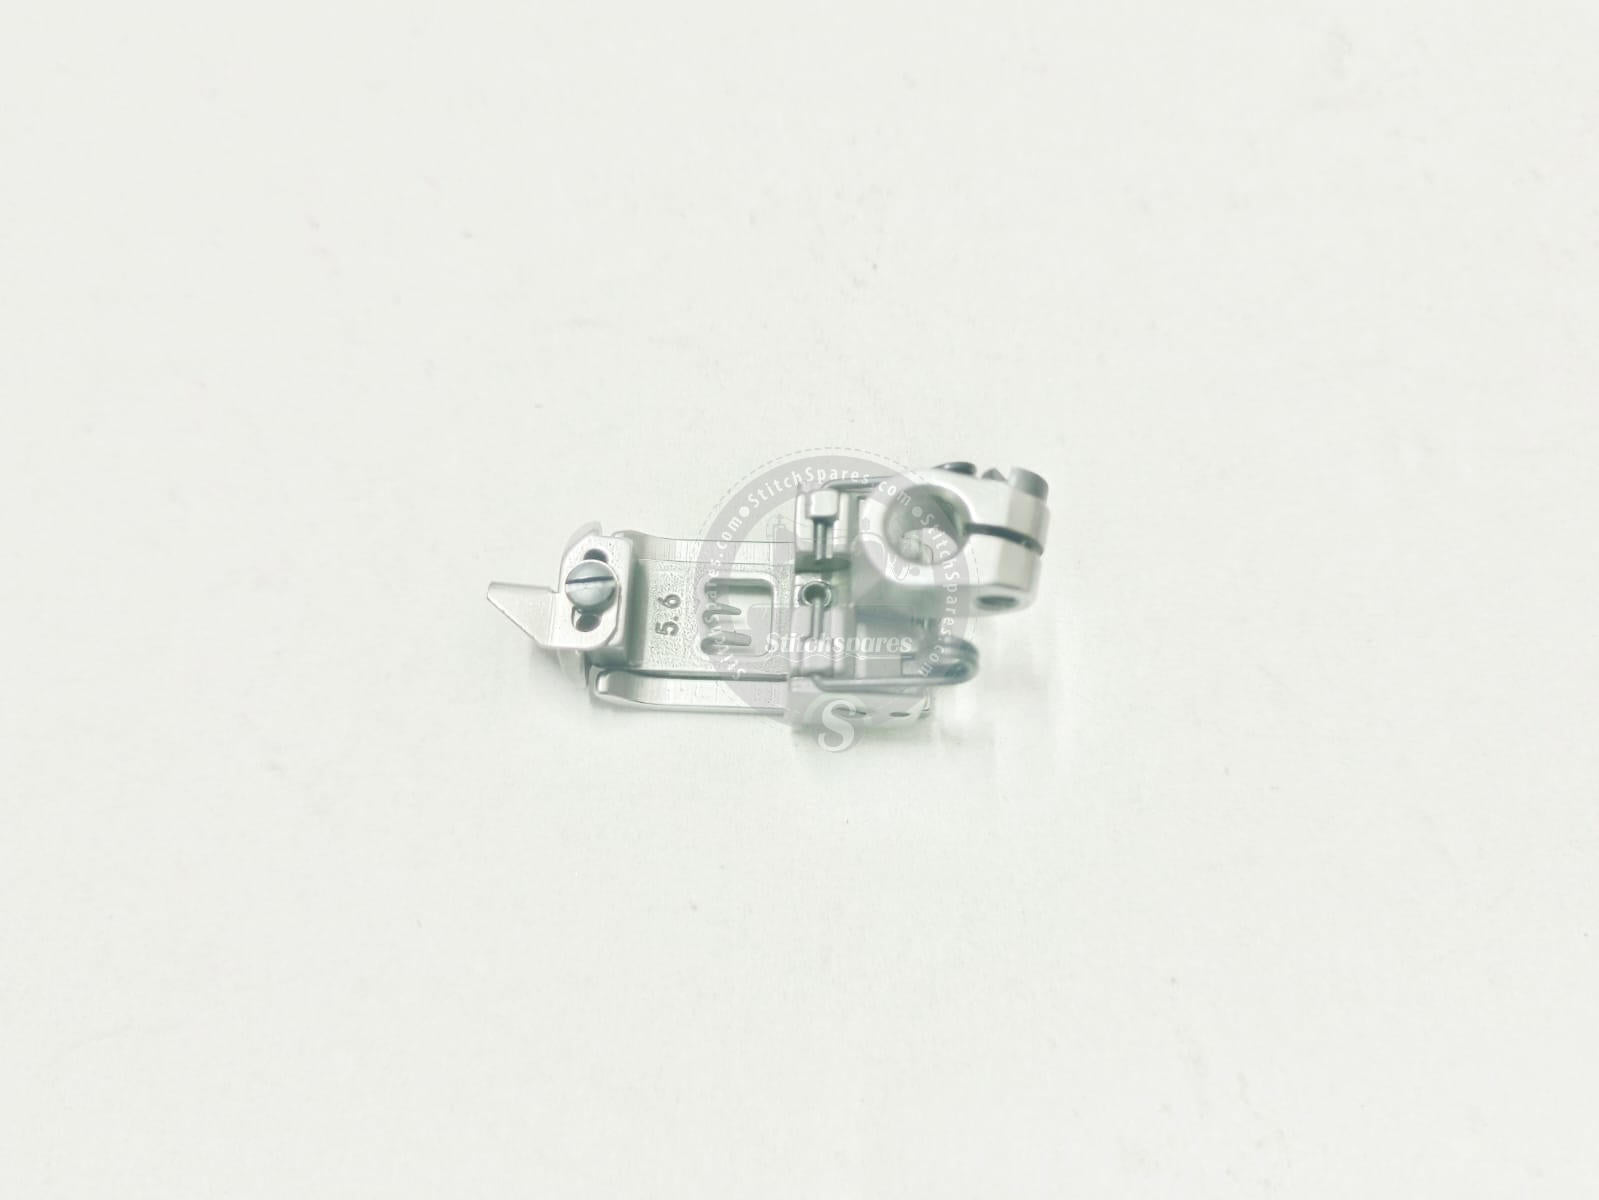 Prensatelas JACK W4 (PIEZAS ORIGINALES DE JACK) Pieza de repuesto para máquina de coser Flatlock Interlock